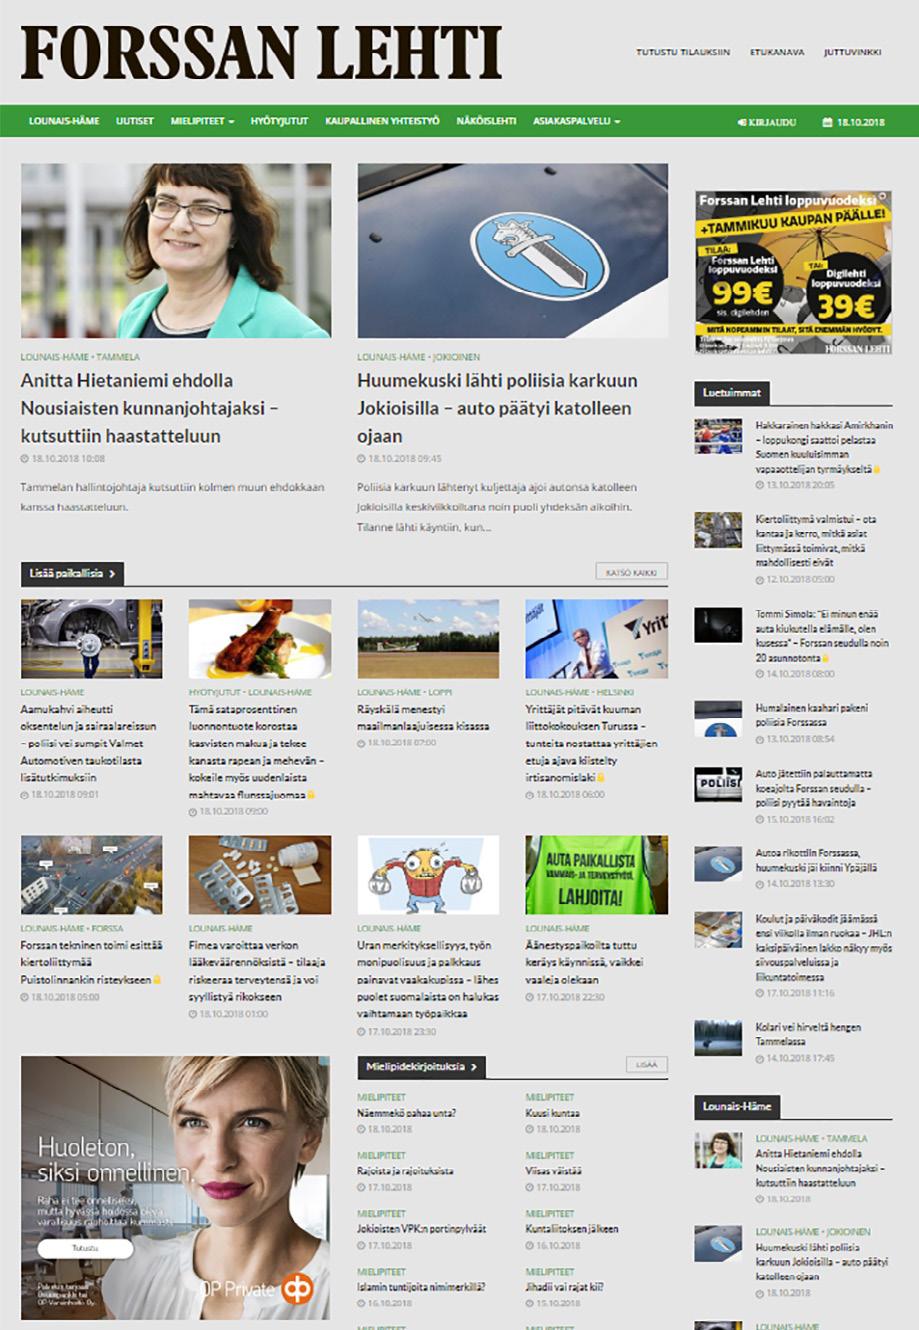 FORSSANLEHTI.FI 1. 728 x 90 / 980 x 120 / 980 x 400 3. 2. Forssan Lehden verkkolehti forssanlehti.fi tarjoaa sanomalehden vahvuudet ja luotettavan mediaympäristön myös verkossa. Forssanlehti.